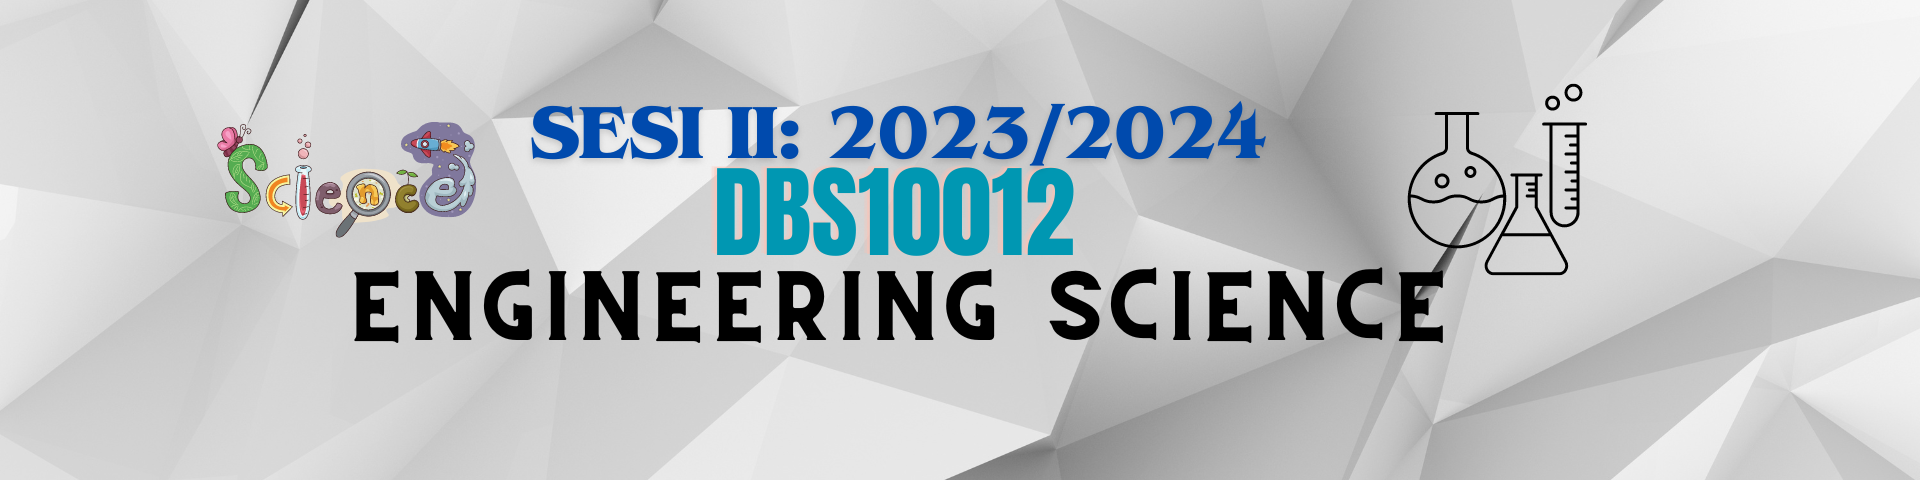 DBS10012 ENGINEERING SCIENCE